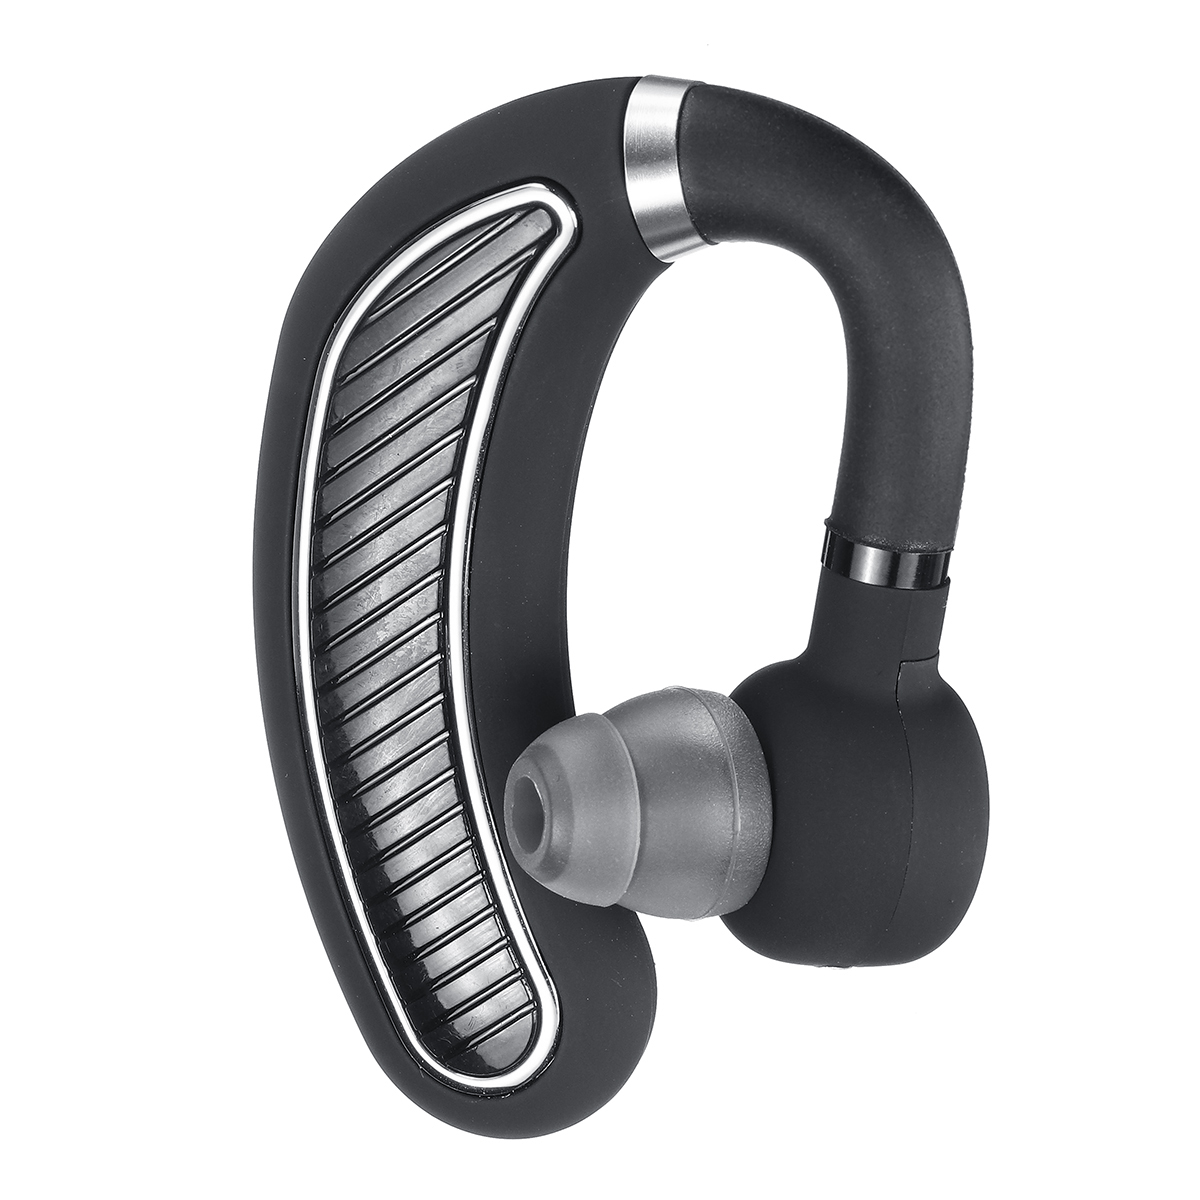 

Mini Portable Wireless bluetooth Earphone Single Earhooks In-ear Headphone with Mic